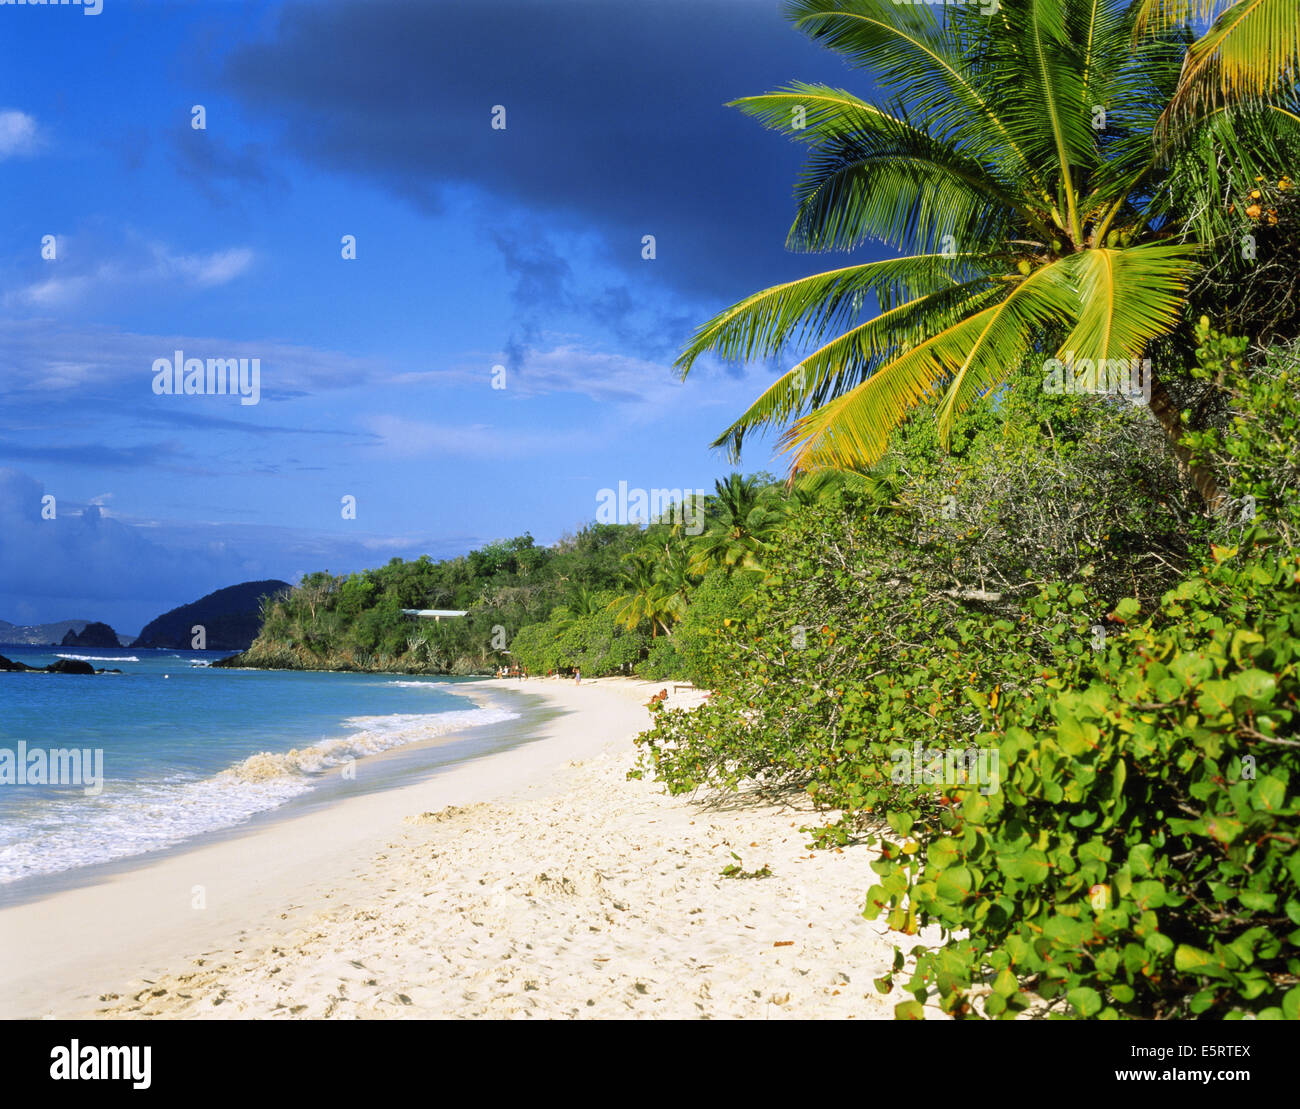 Islas Vírgenes de los Estados Unidos, la isla de San Juan, Bahía Trunk, los turistas de playa tropical en el Caribe Foto de stock